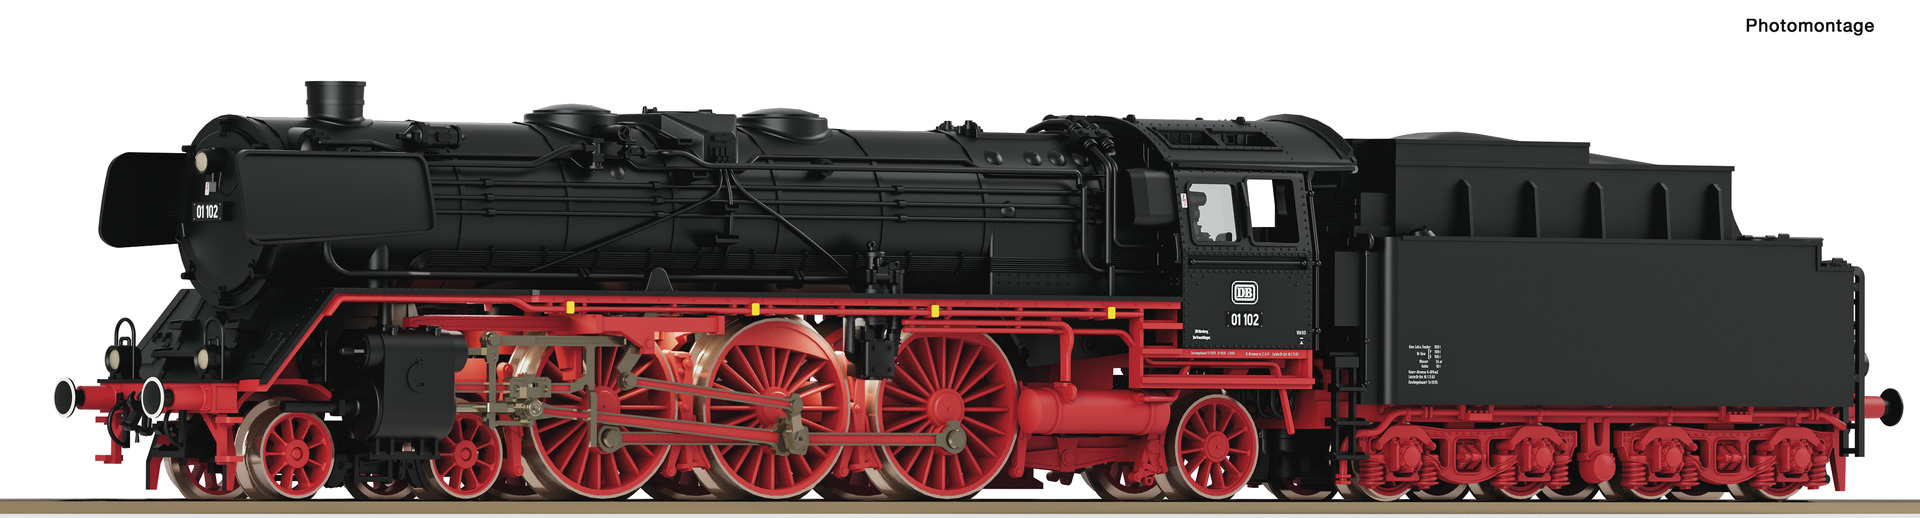 Fleischmann 714575 Dampflokomotive 01 102, DB 